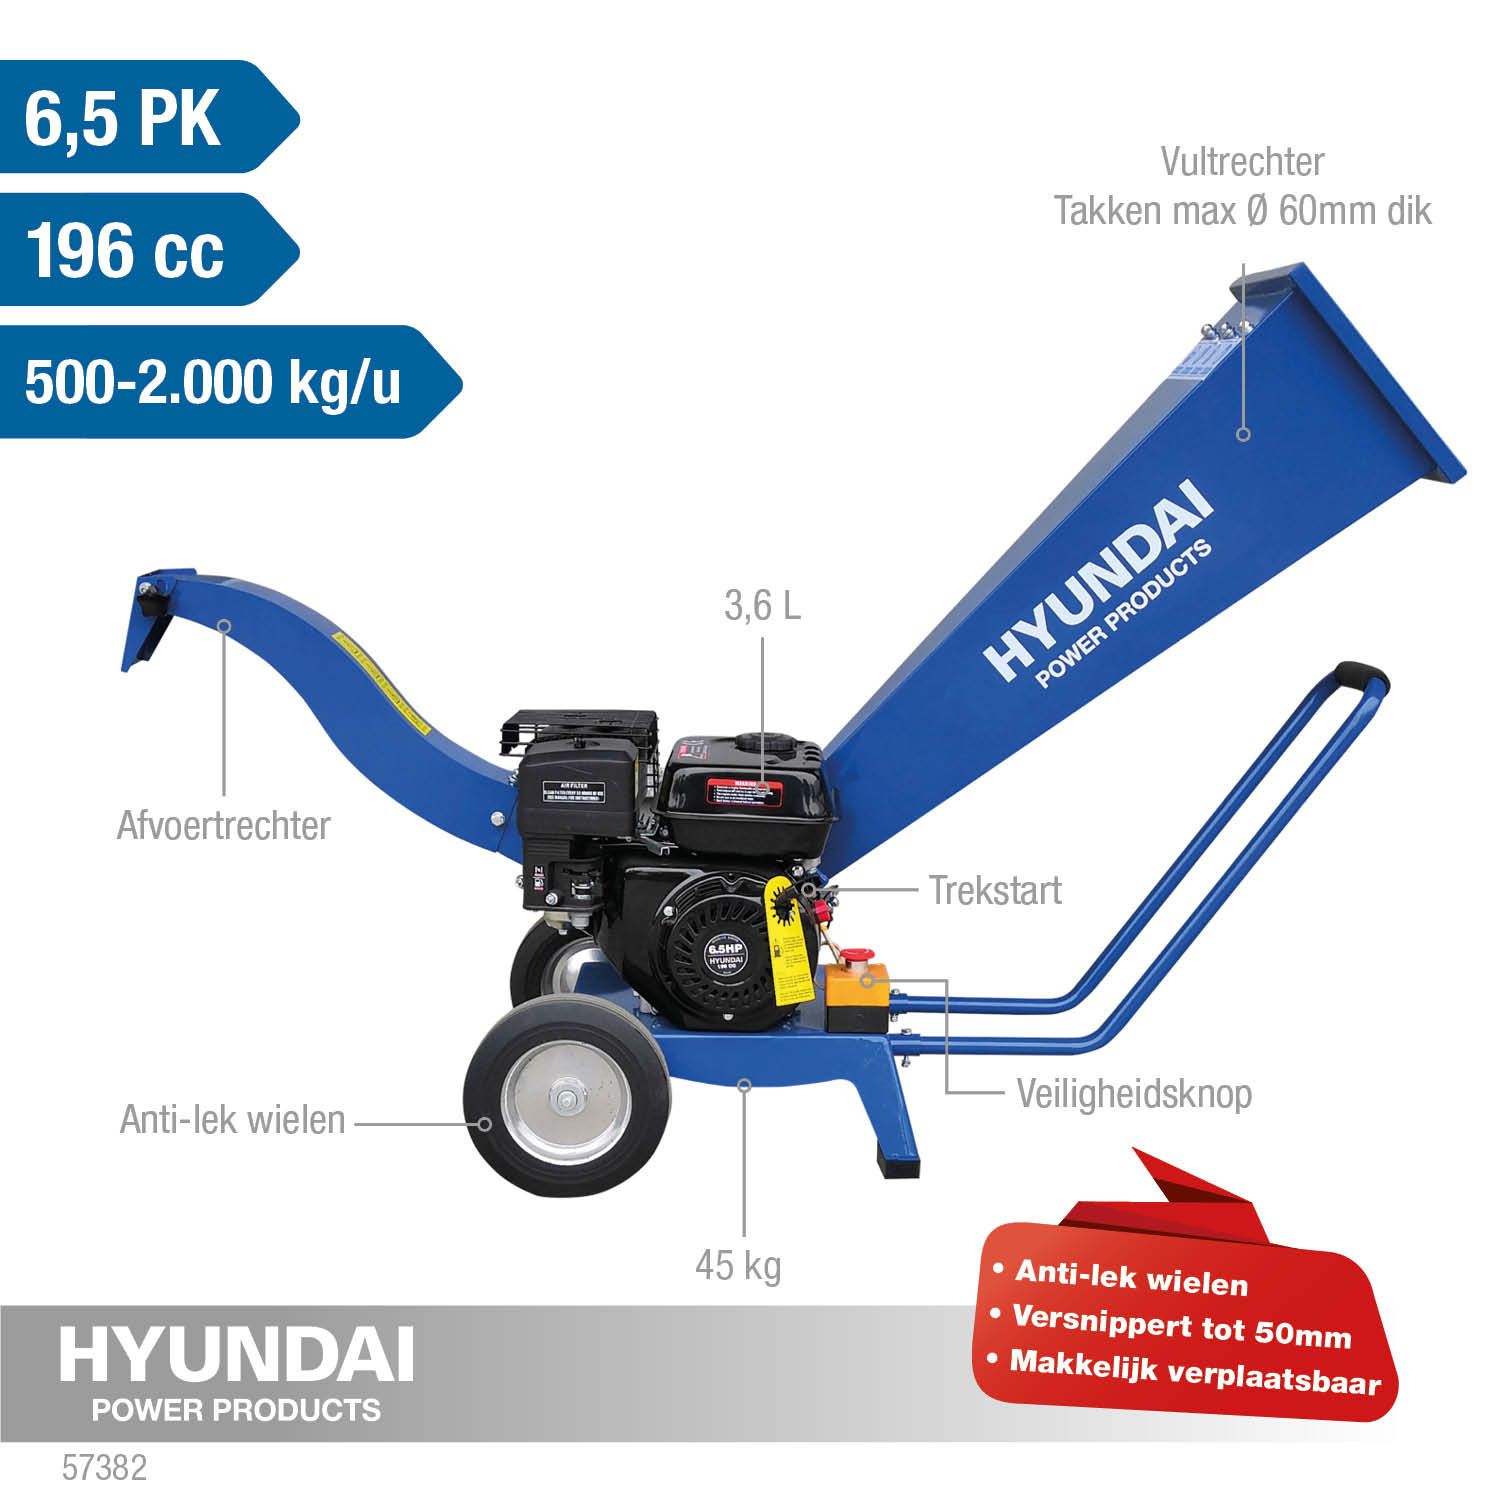 Hyundai Hakselaar 6.5pk 196cc